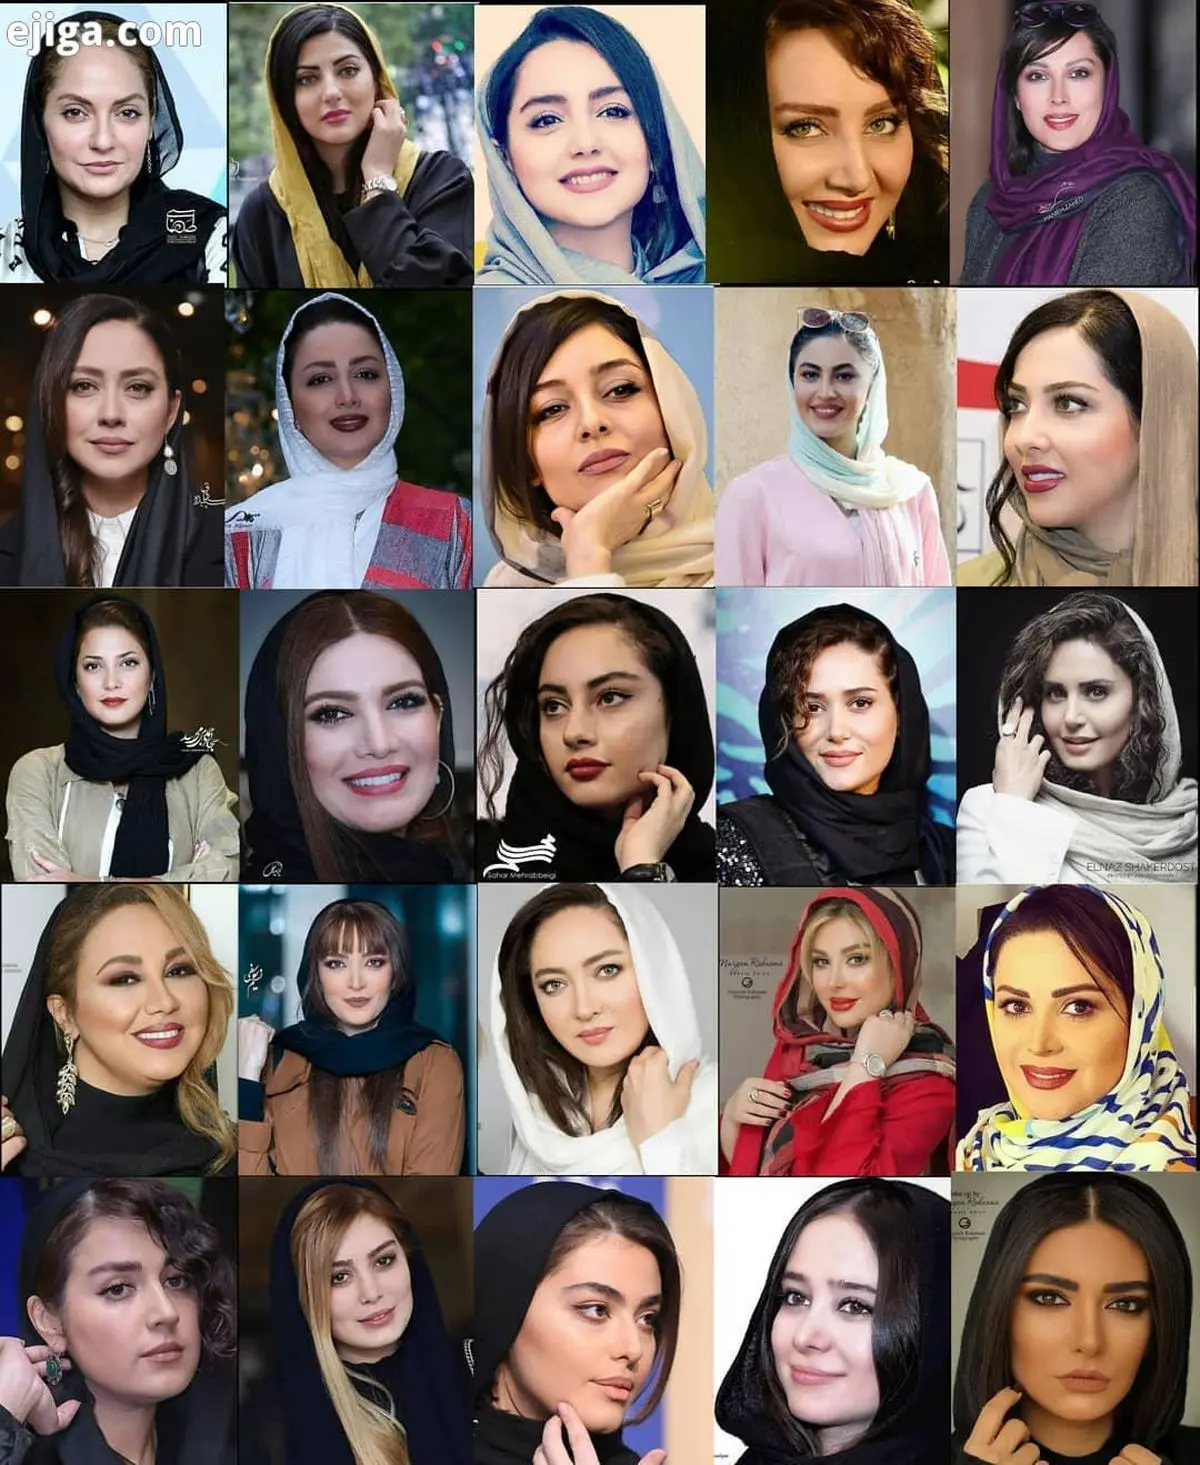 فروش عجیب جوراب بازیگران زن ایرانی در تلگرام! + عکس